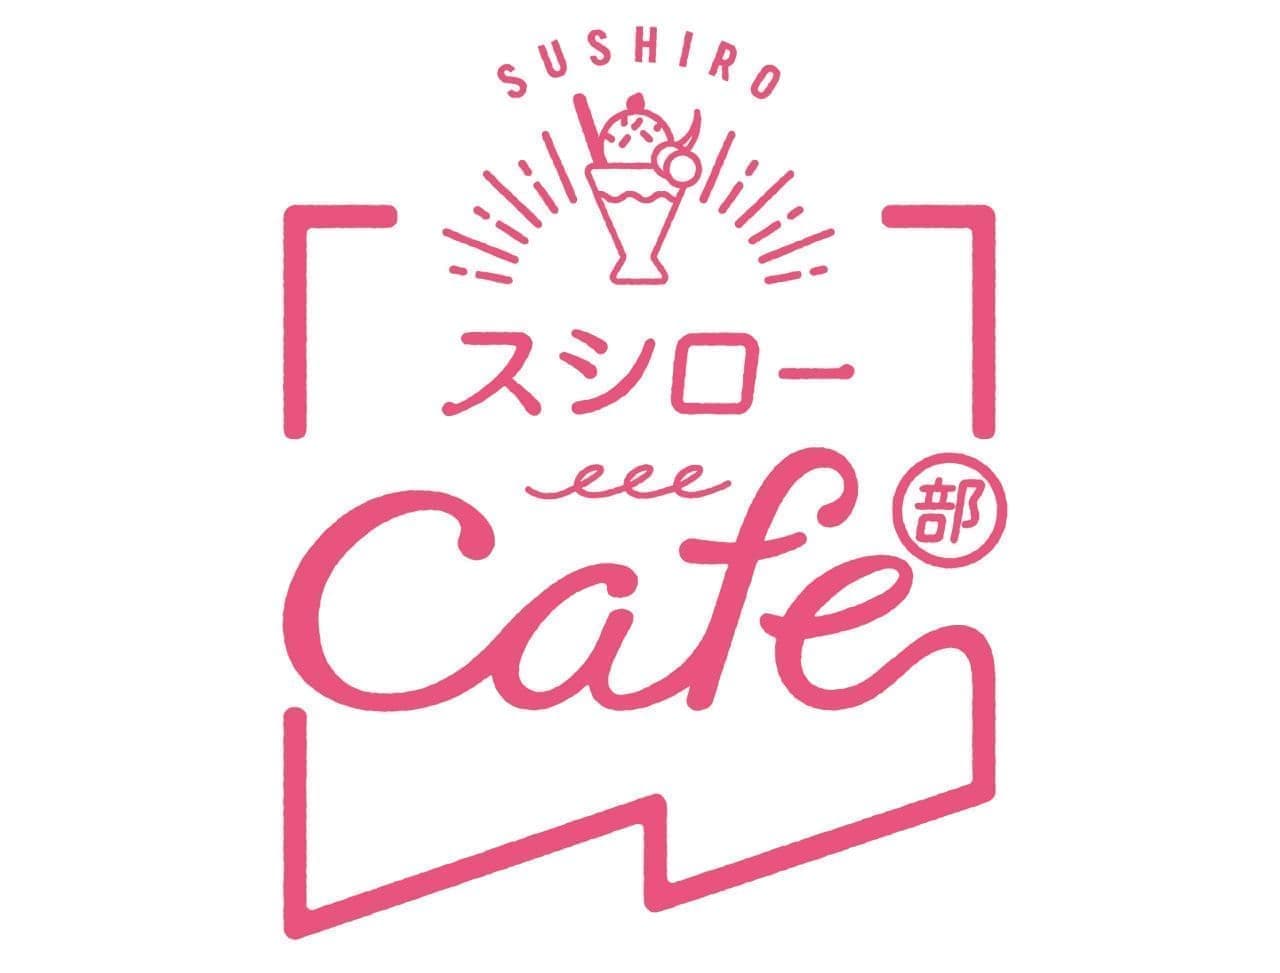 Sushiro Cafe Department